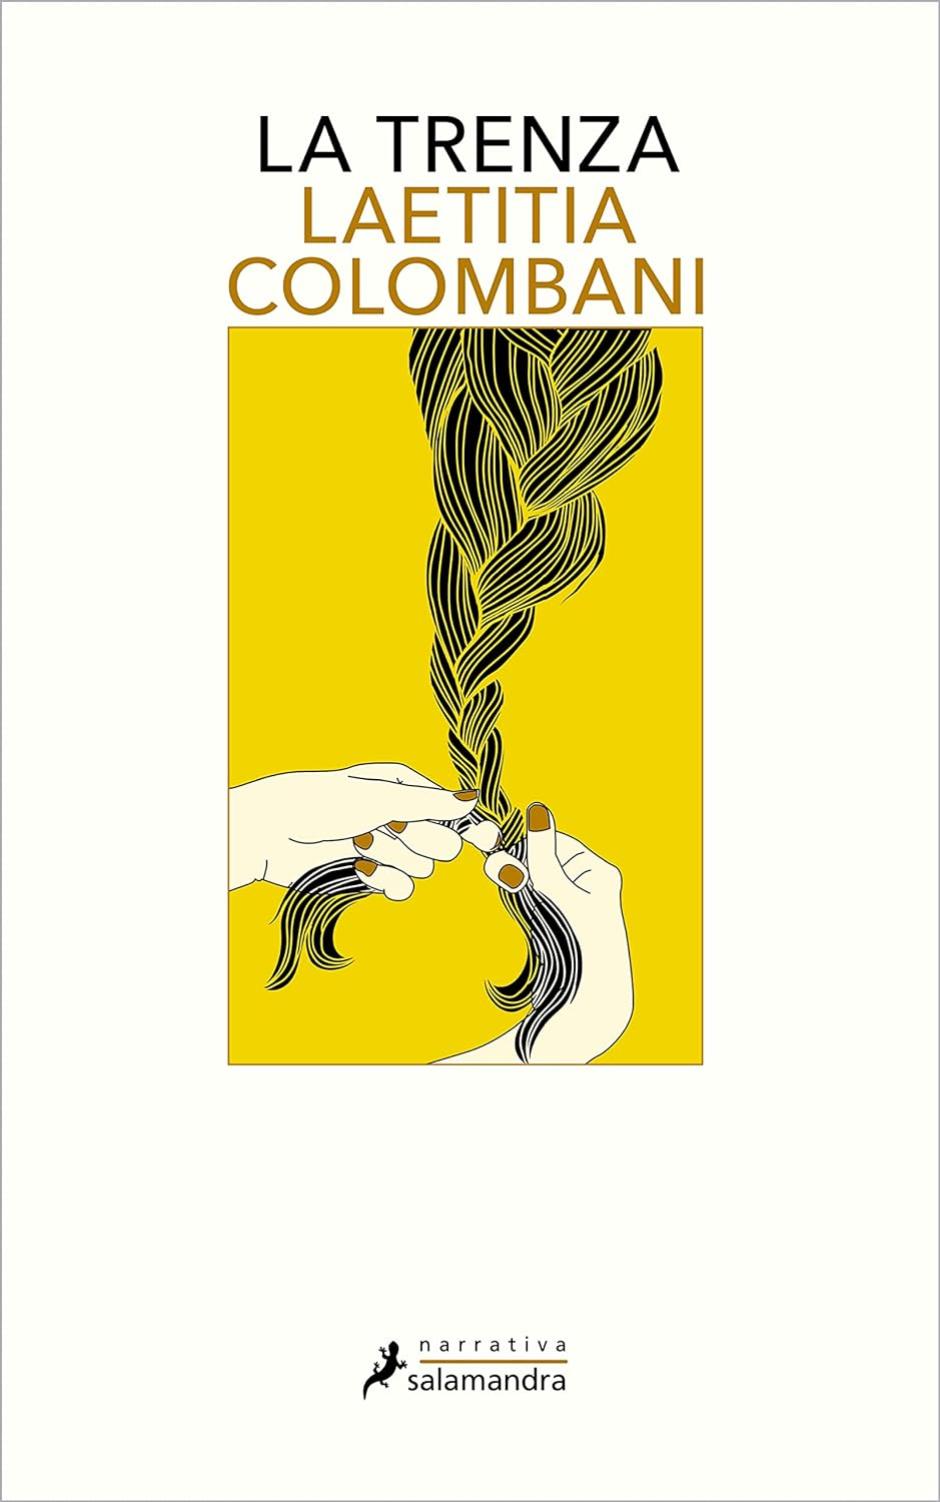 'La trenza', el libro de Laetitia Colombani que ha adaptado ahora a la gran pantalla